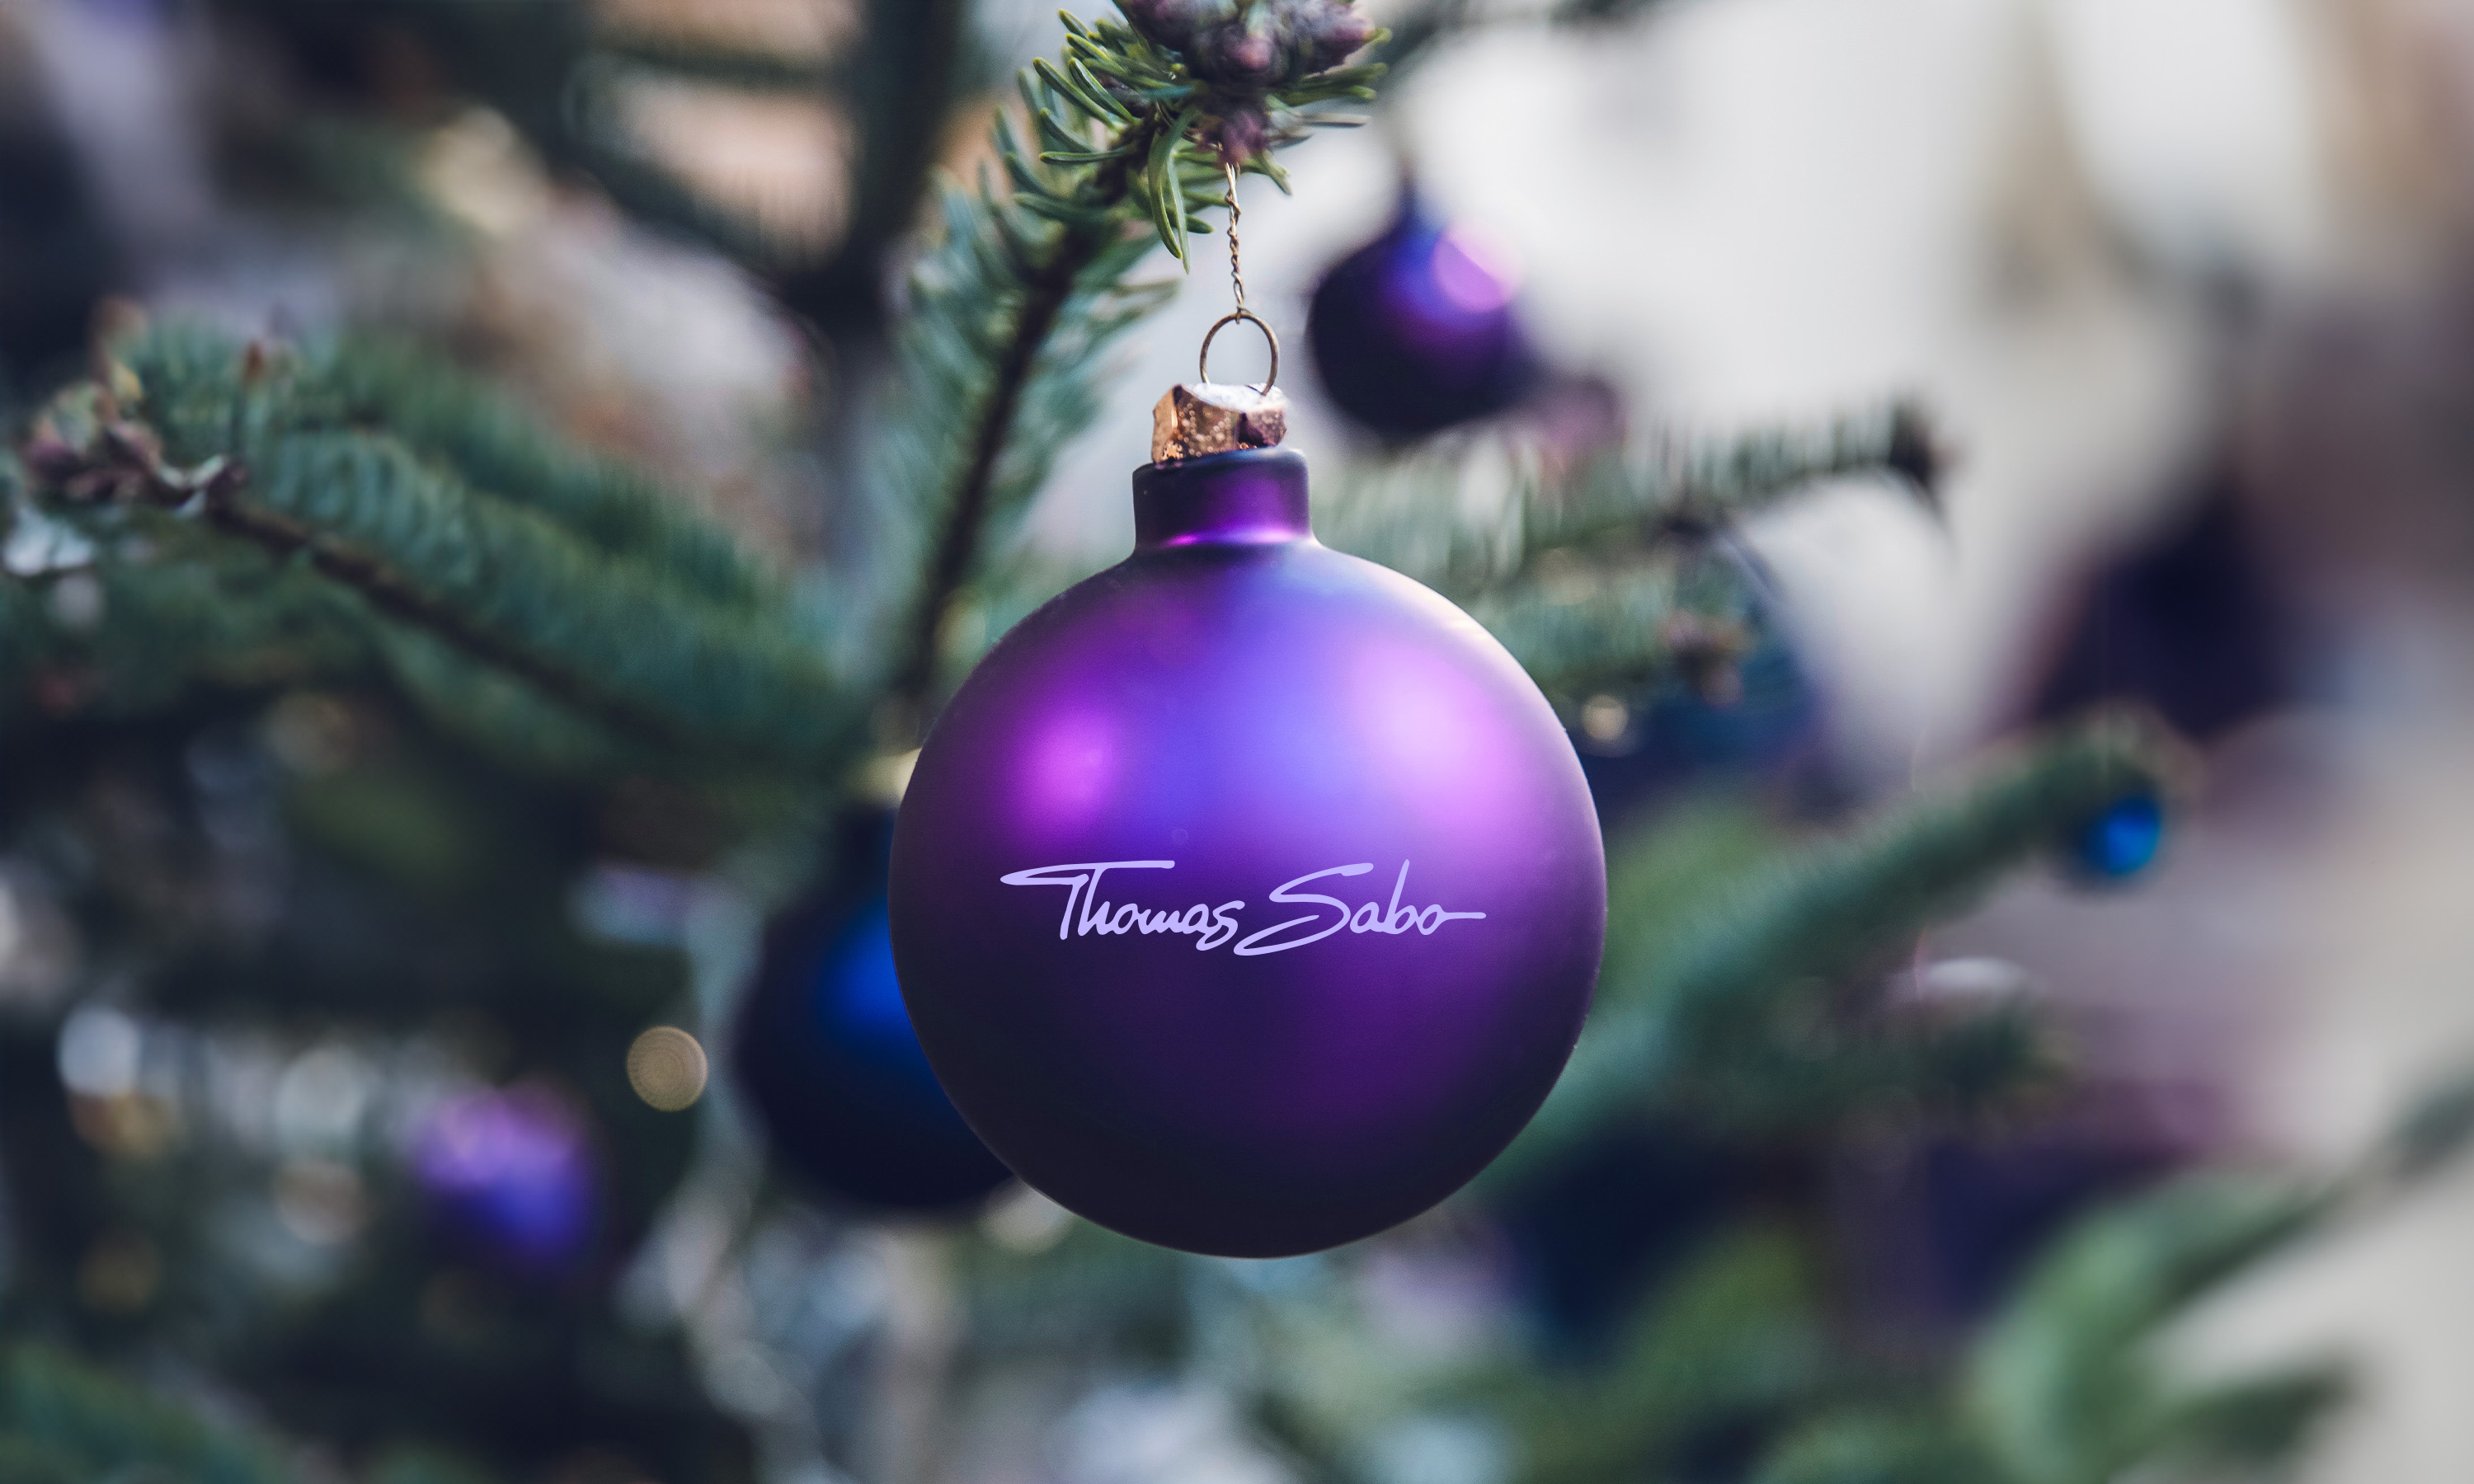 THOMAS SABO Weihnachtsmarkt: Aller guten Dinge sind drei